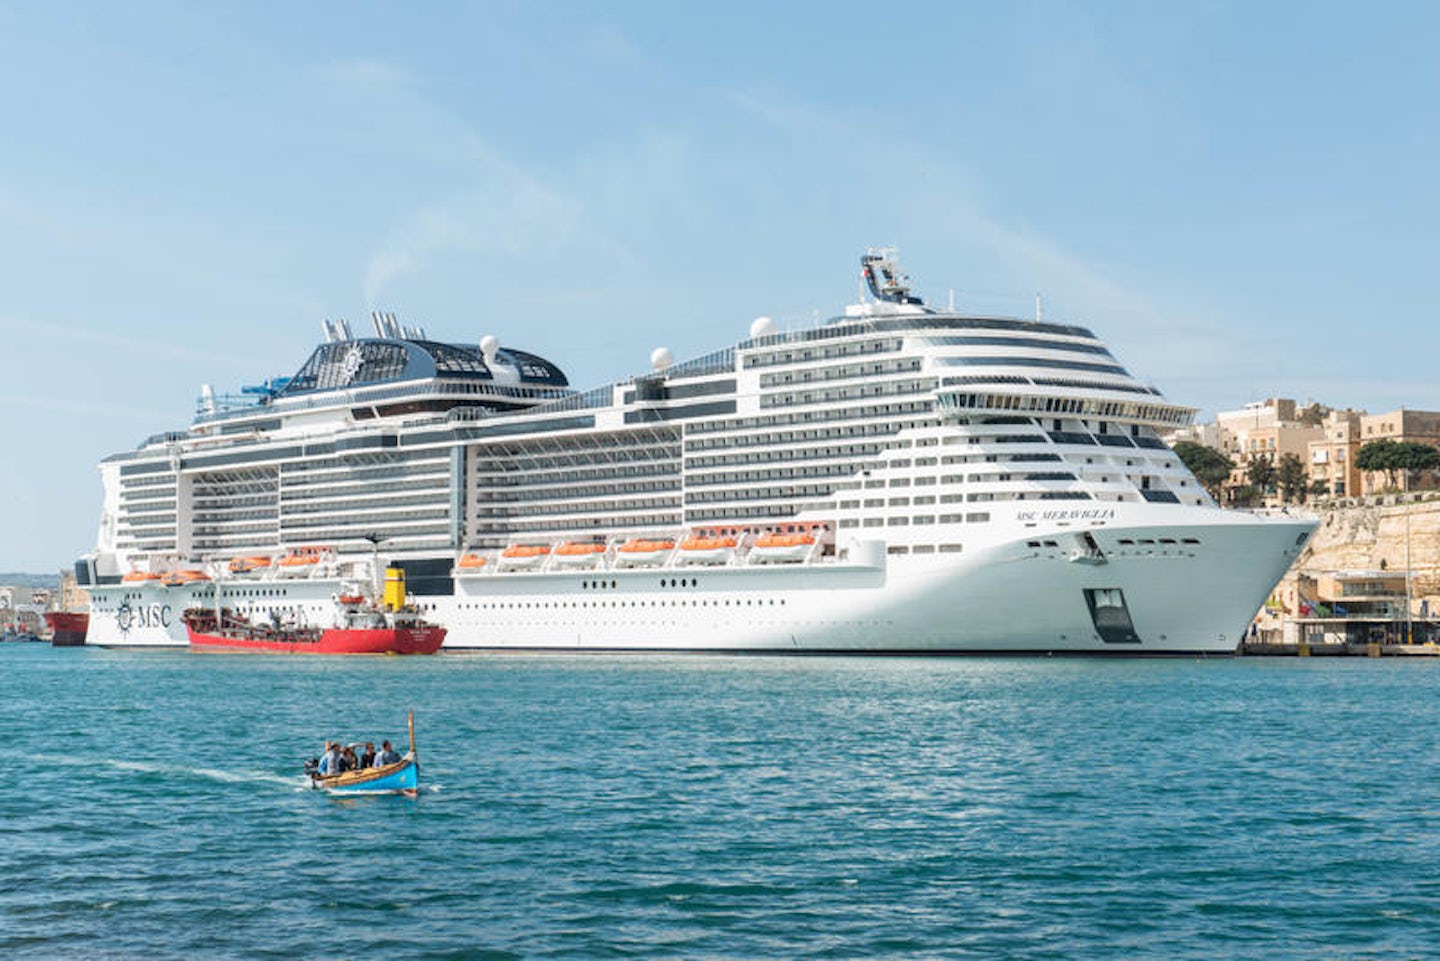 meraviglia cruise ship photos